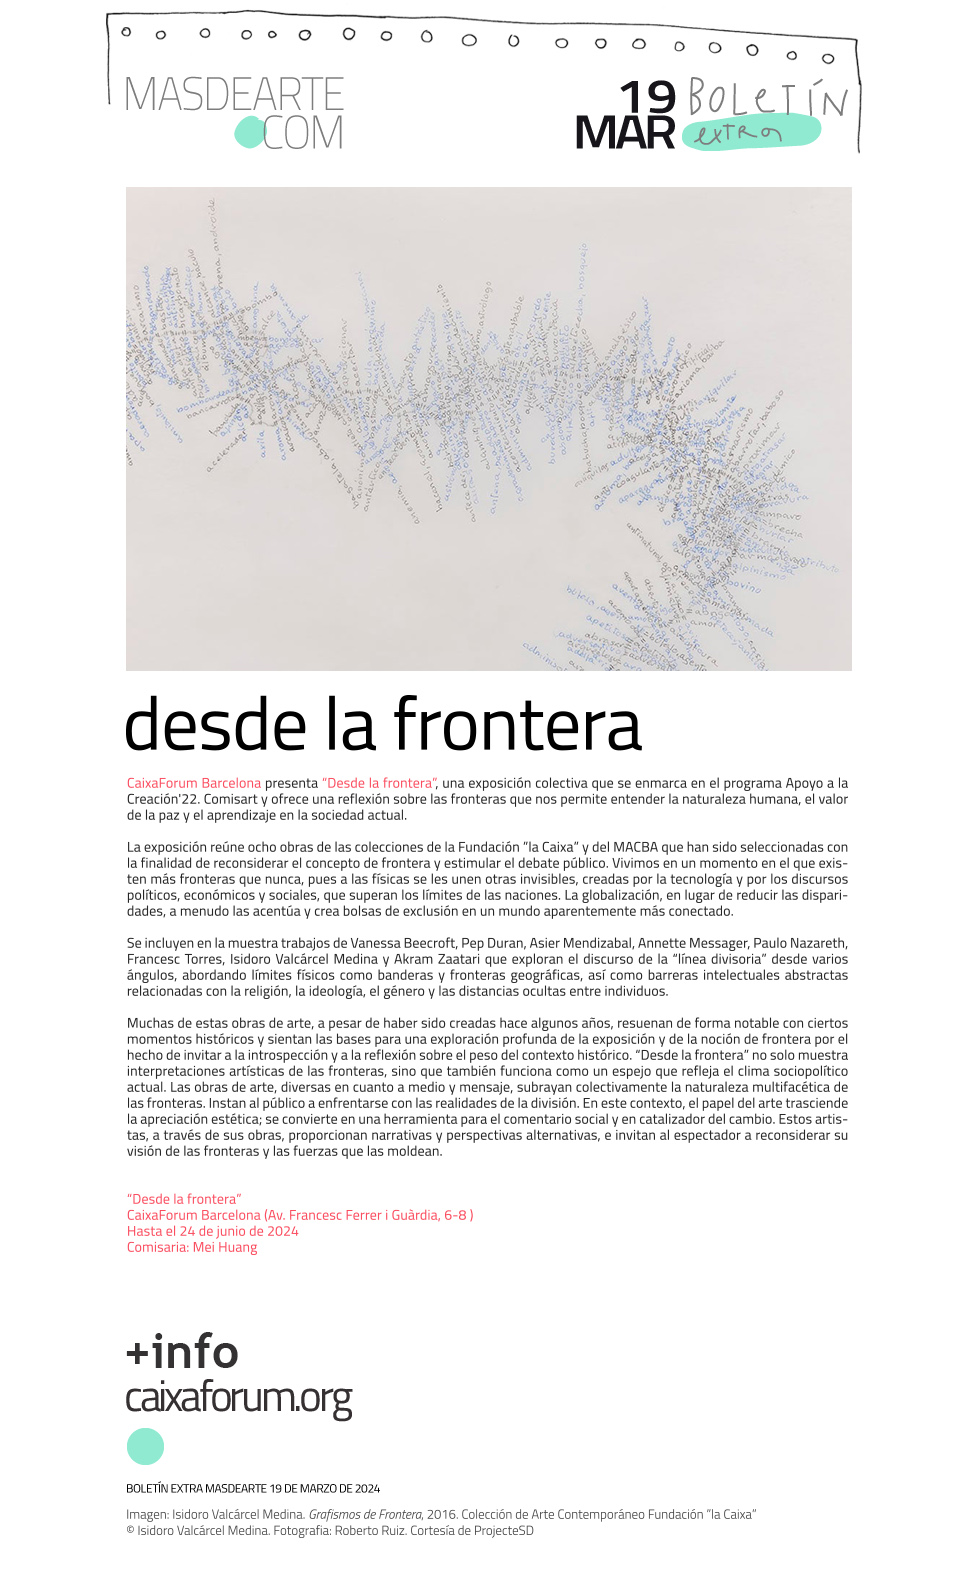 CaixaForum Barcelona presenta “Desde la frontera”, una exposición colectiva que se enmarca en el programa Apoyo a la Creación'22. Comisart